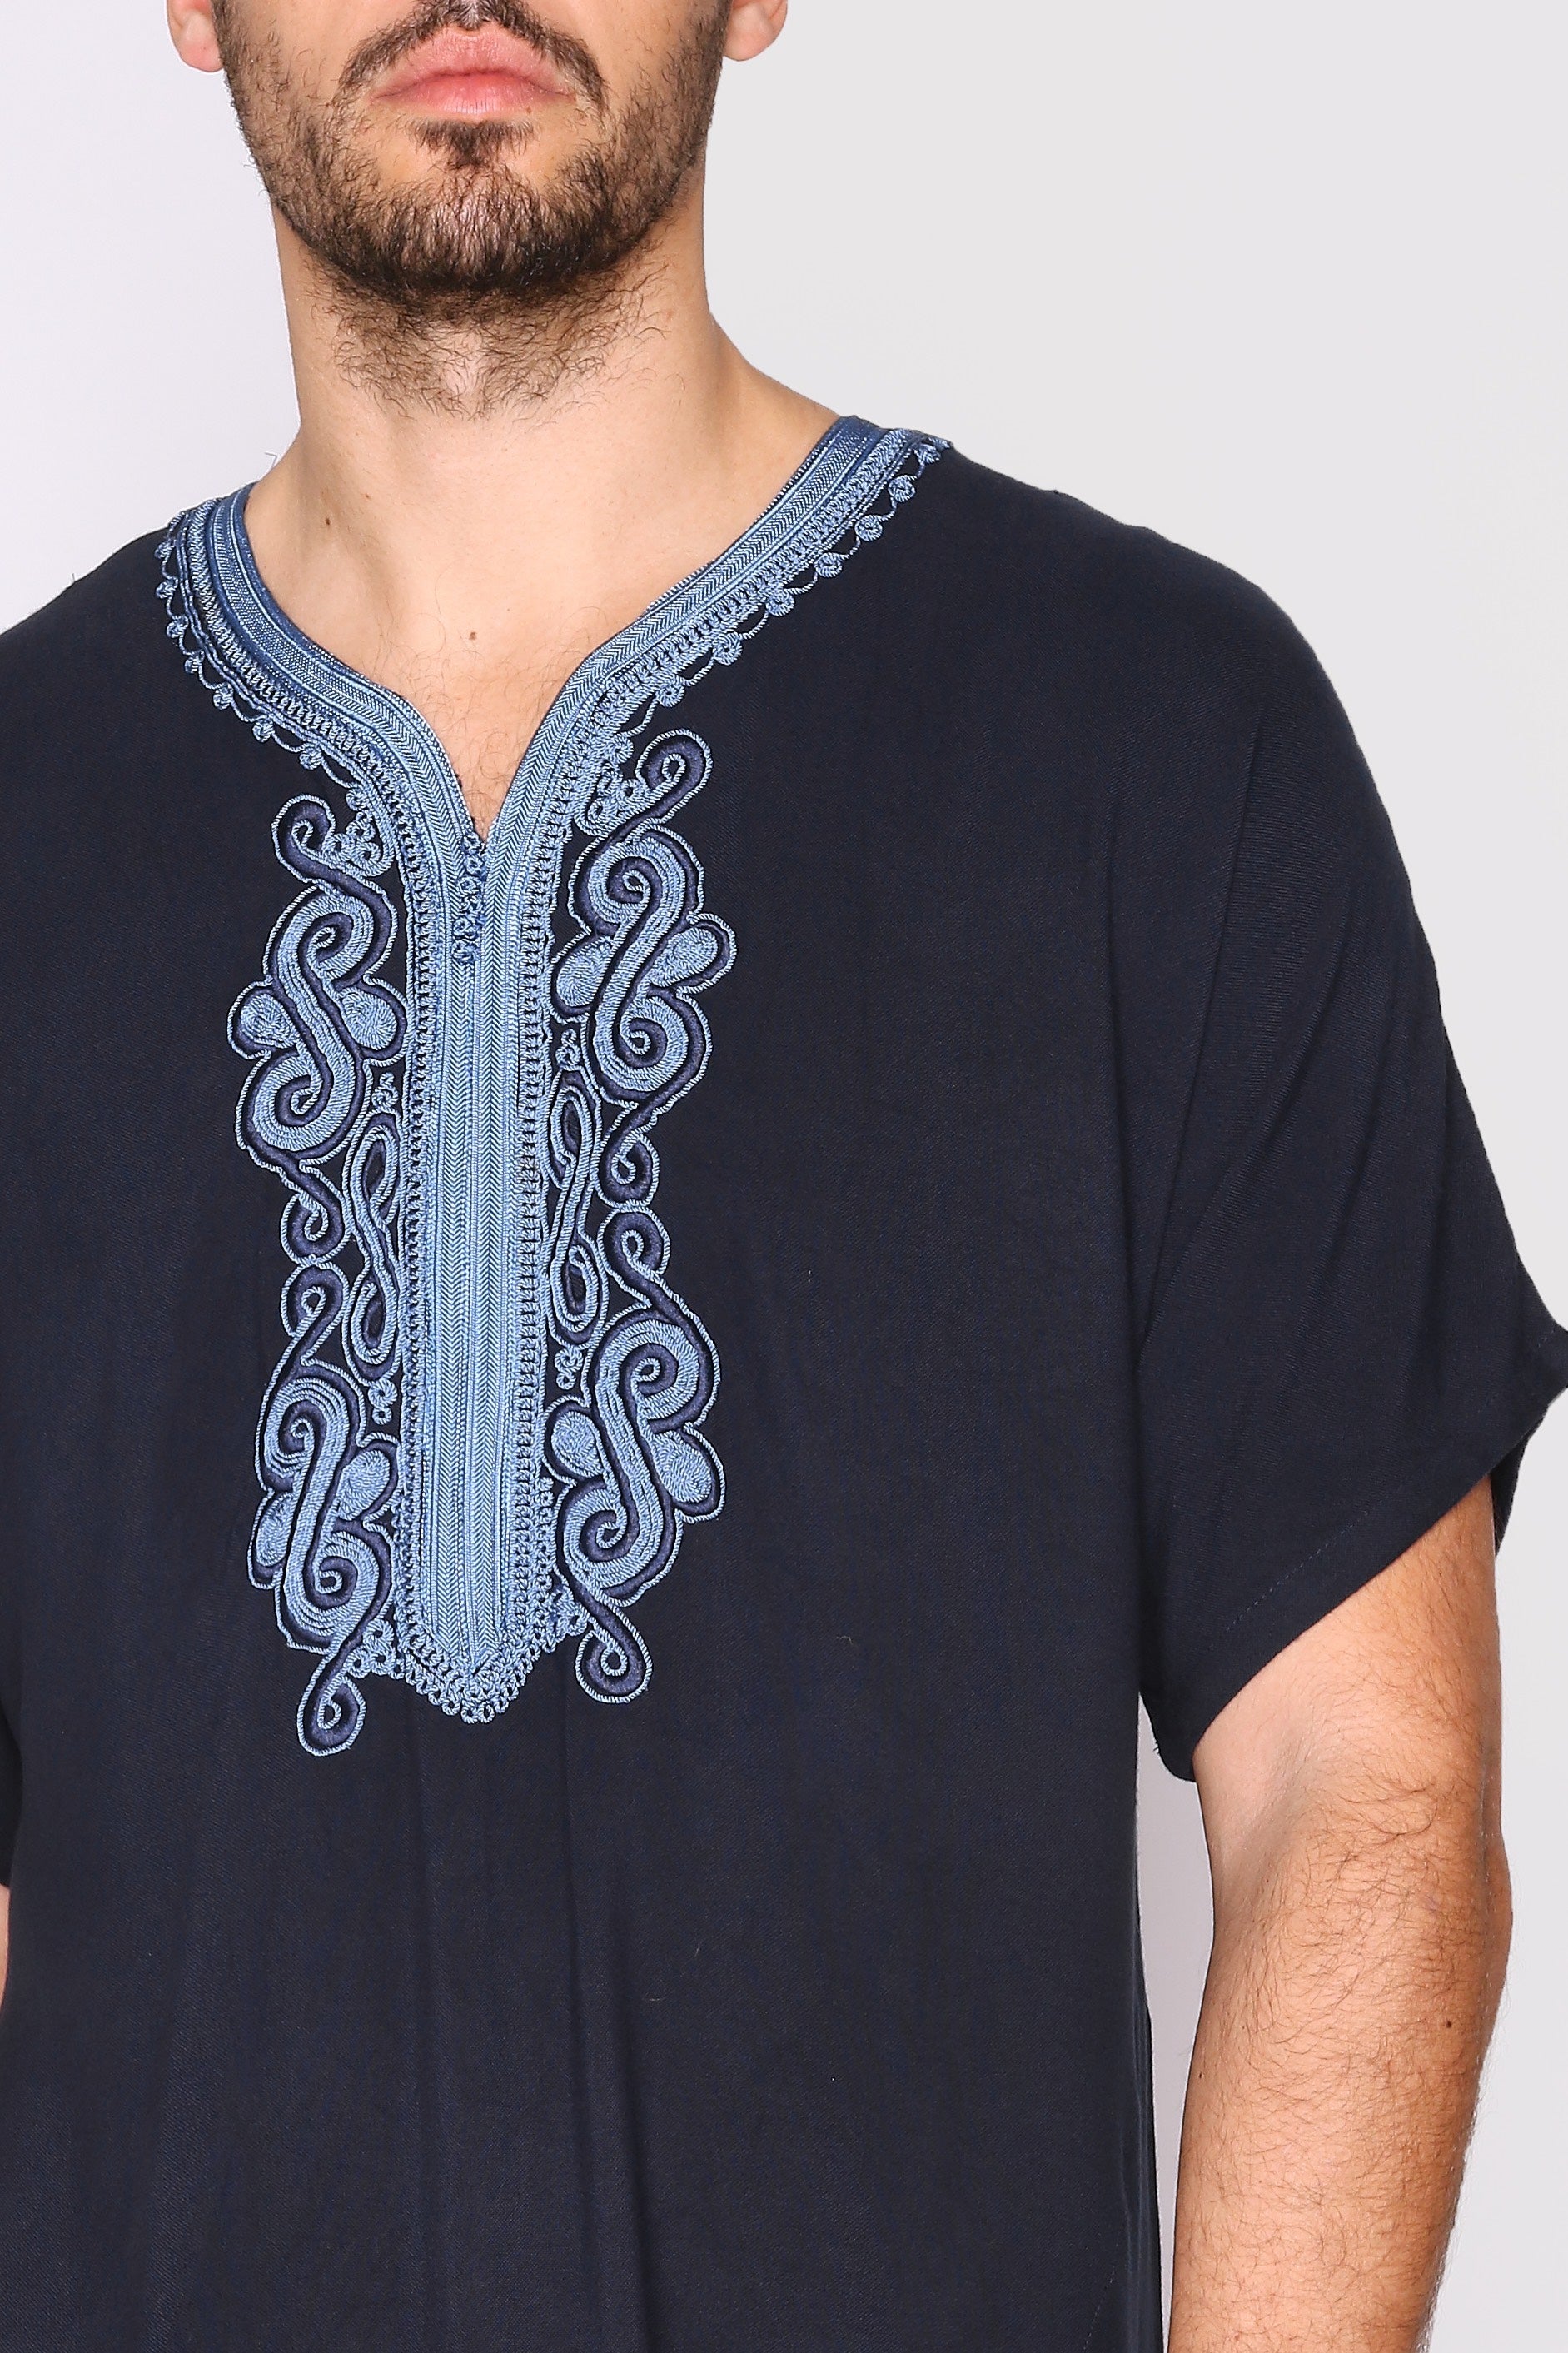 Gandoura Haitham Men's Short Sleeve Full-Length Embroidered Robe Casual Thobe in Black